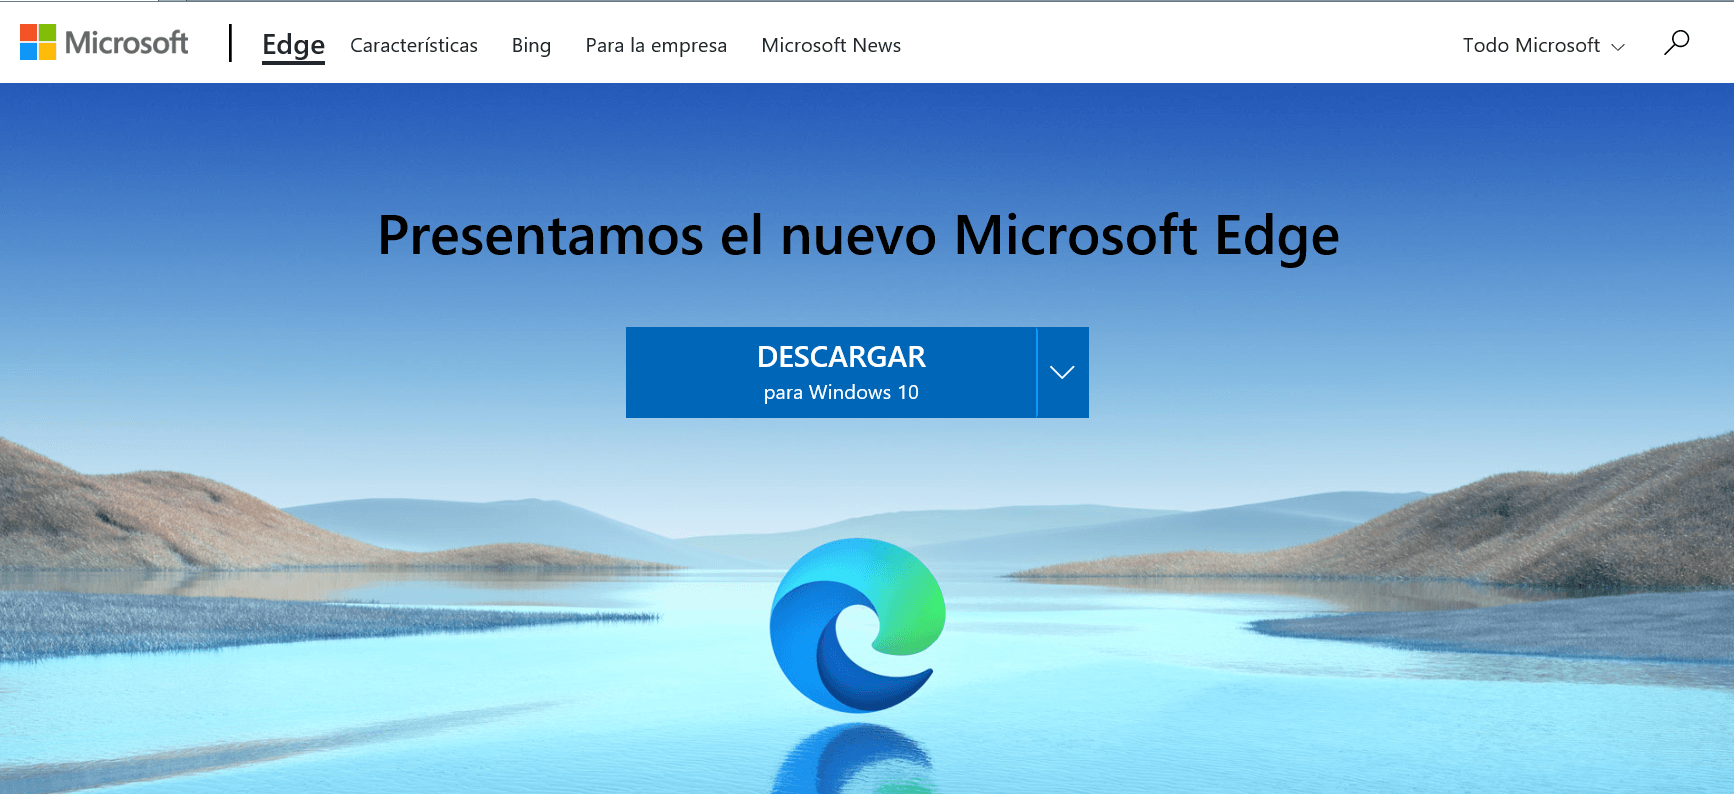 Como Descargar E Instalar El Nuevo Microsoft Edge En Windows 10 Images Porn Sex Picture 6910